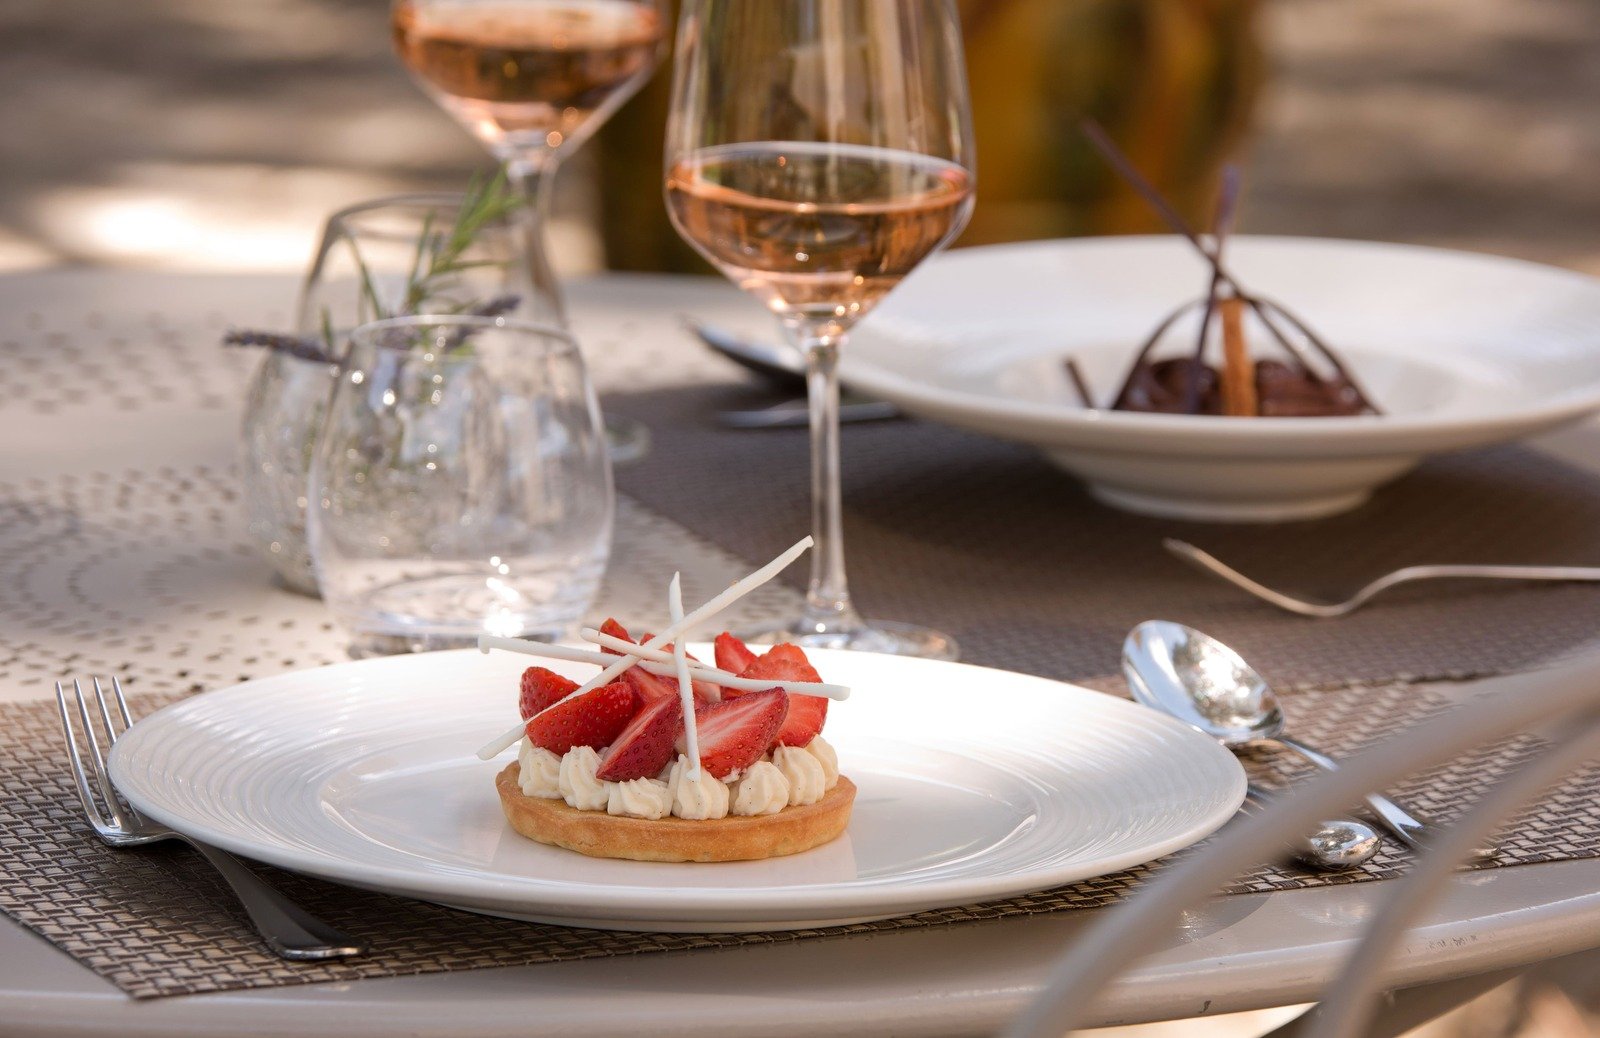 Luxury boutique hotel Benvengudo 4 stars Les Baux-de-Provence France dessert restaurant